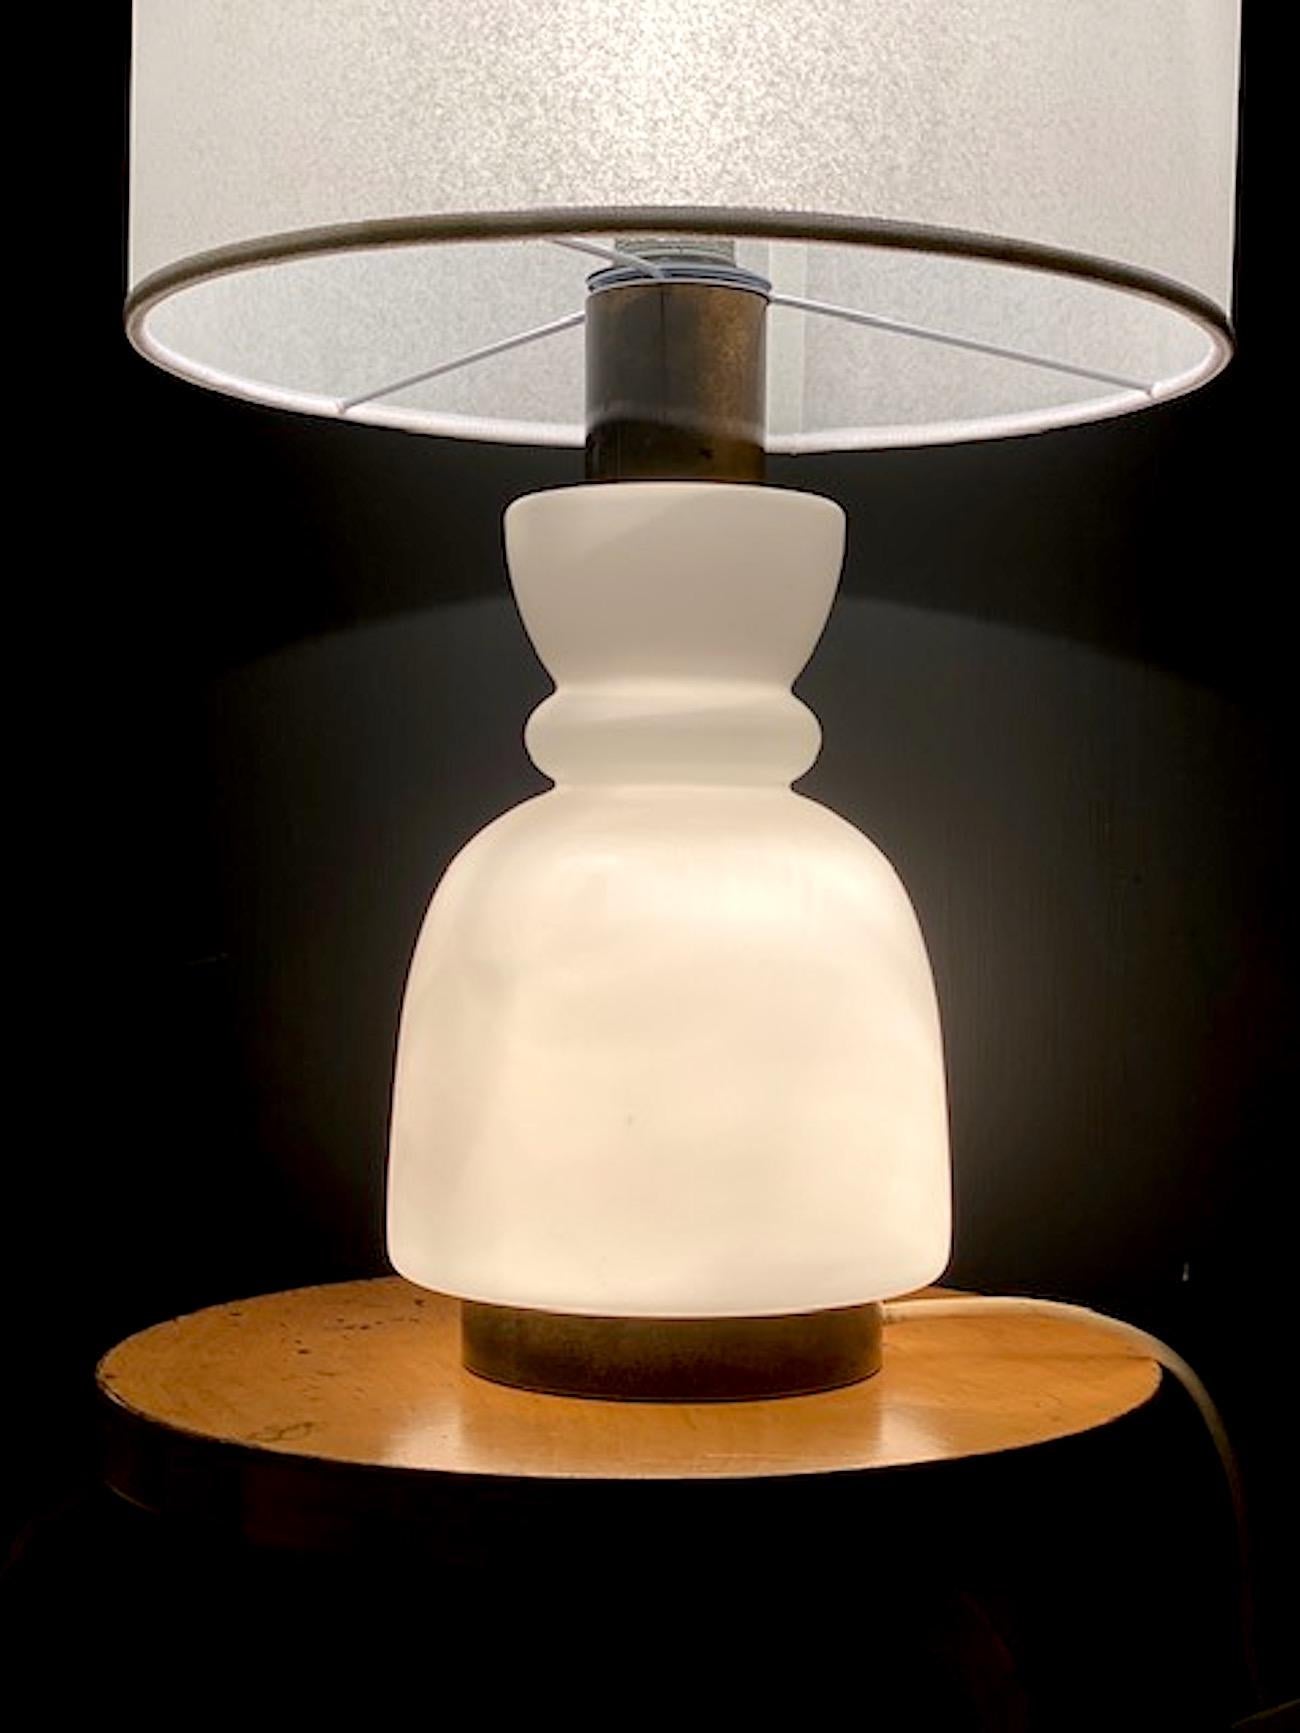 Eine italienische Tischlampe aus Glas und Messing aus den späten 1950er bis 1960er Jahren, die der bekannten Beleuchtungsfirma Stilnovo zugeschrieben wird. Der Sockel leuchtet und ist aus mundgeblasenem Glas in Vasenform gefertigt. Die Lampe hat